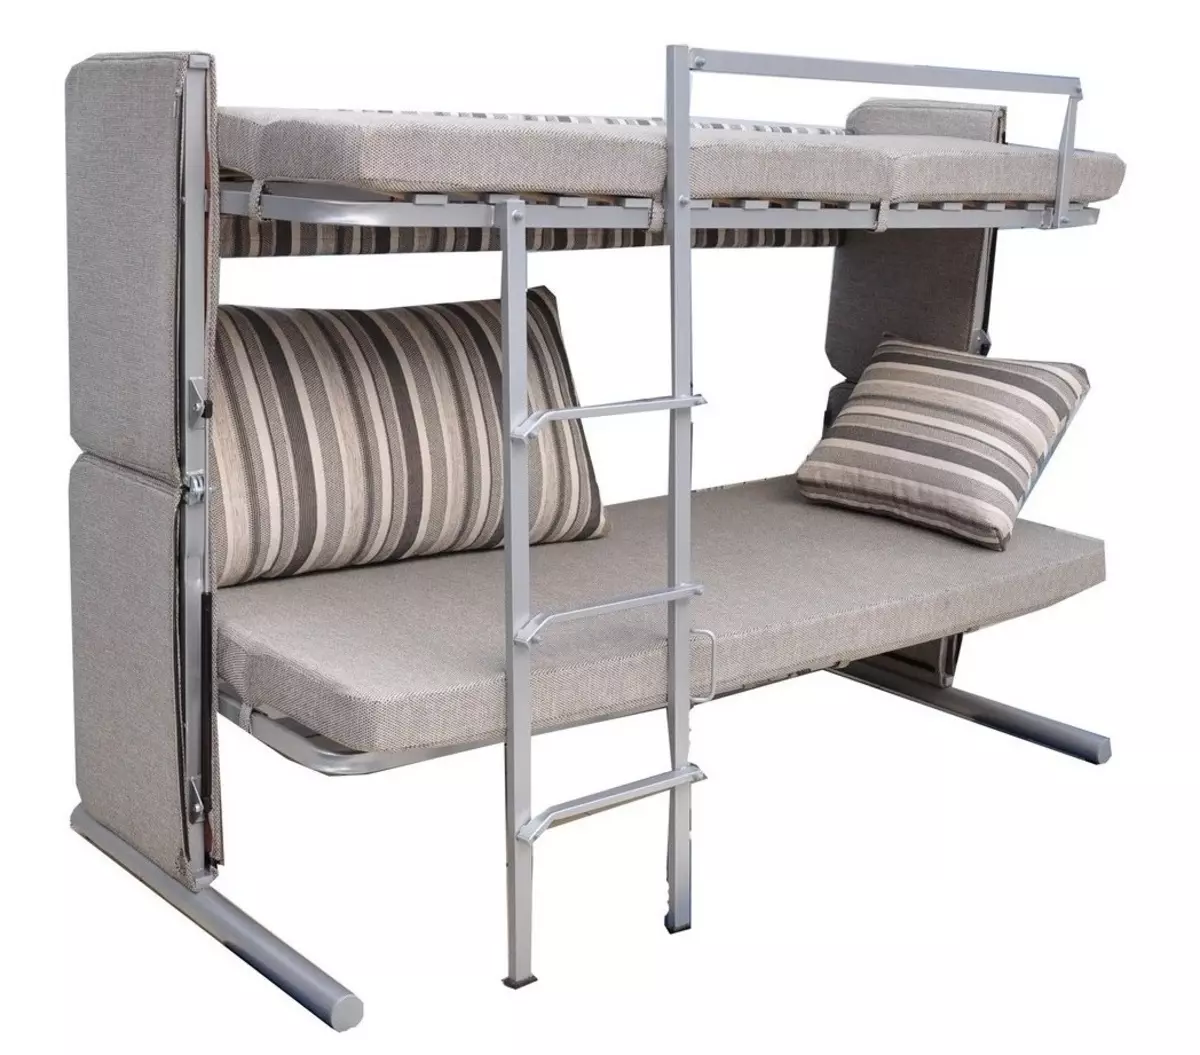 Sofa Transformer dans un lit superposé: Choisissez un transformateur de deux étages pour un appartement de petite taille 9041_43